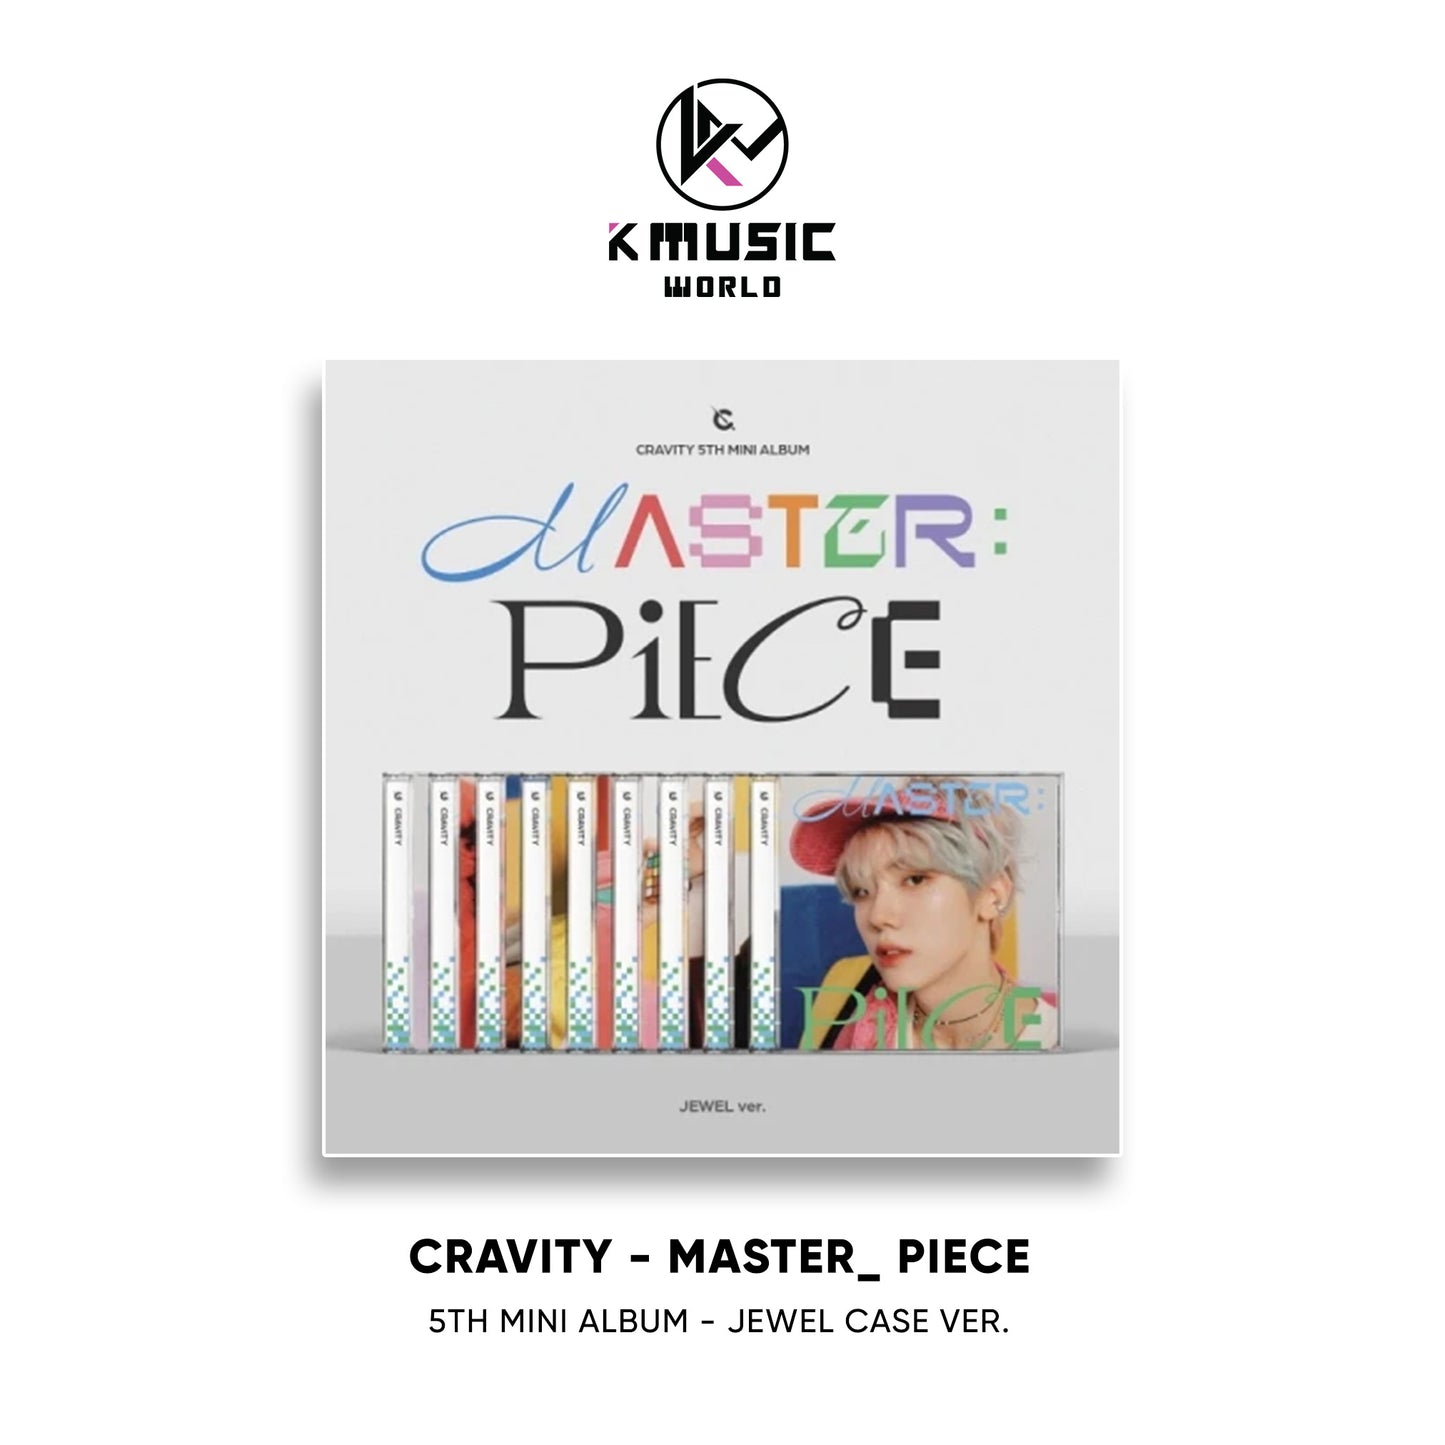 CRAVITY - MASTER : PIECE [5th Mini Album - Jewel Case Ver.]